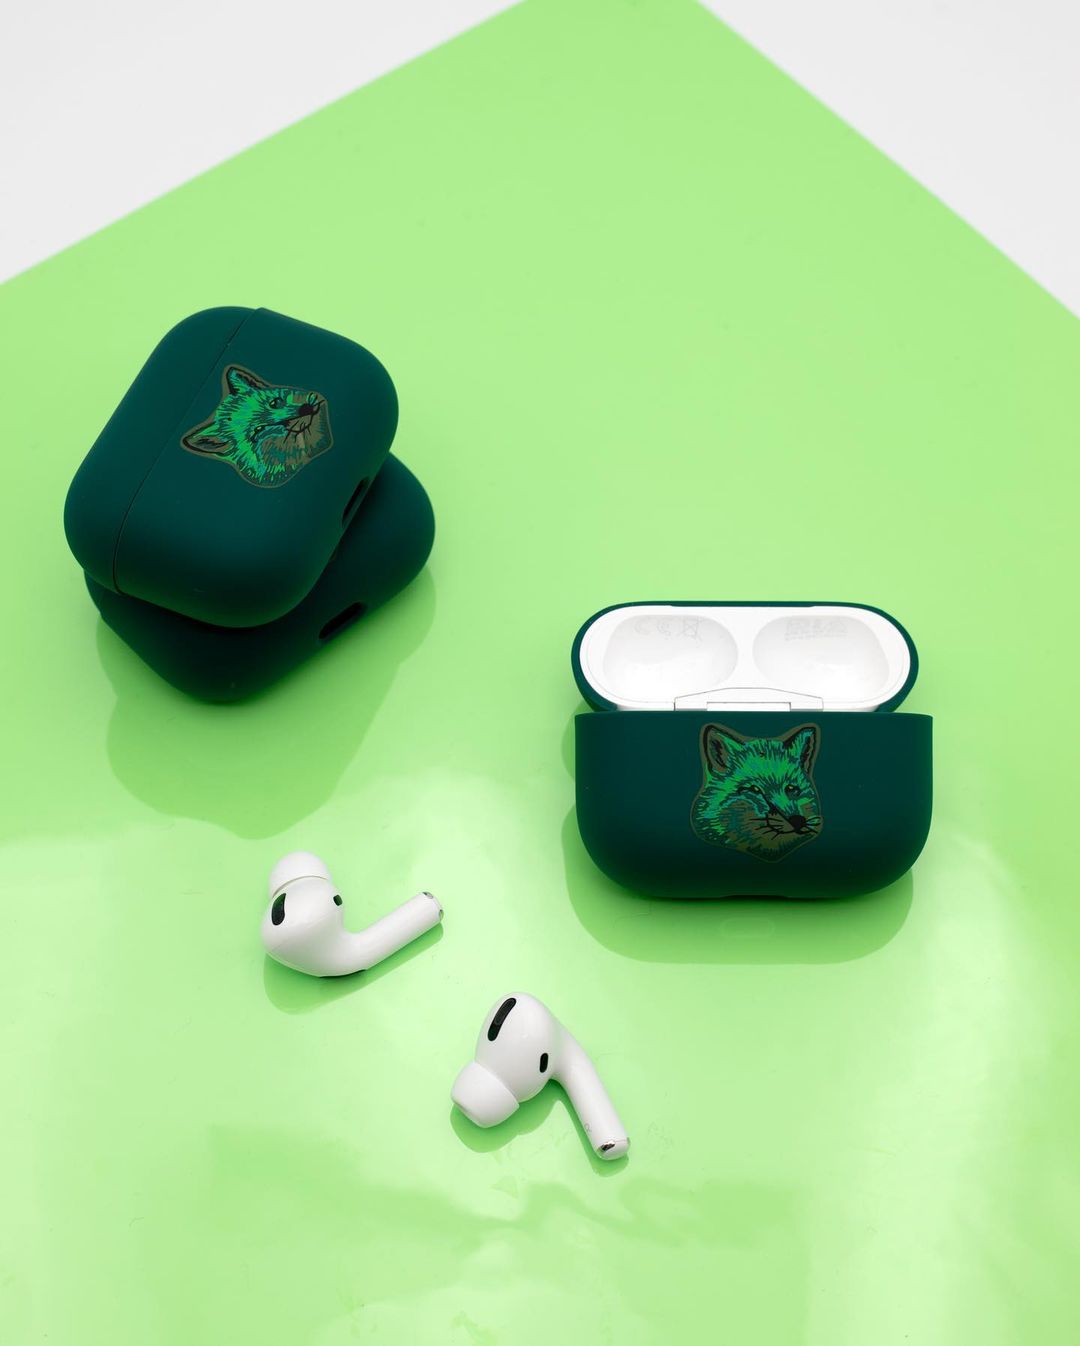 Maison Kitsuné выпустил коллекцию аксессуаров для iPhone в изумрудно-зеленой гамме (фото 2)